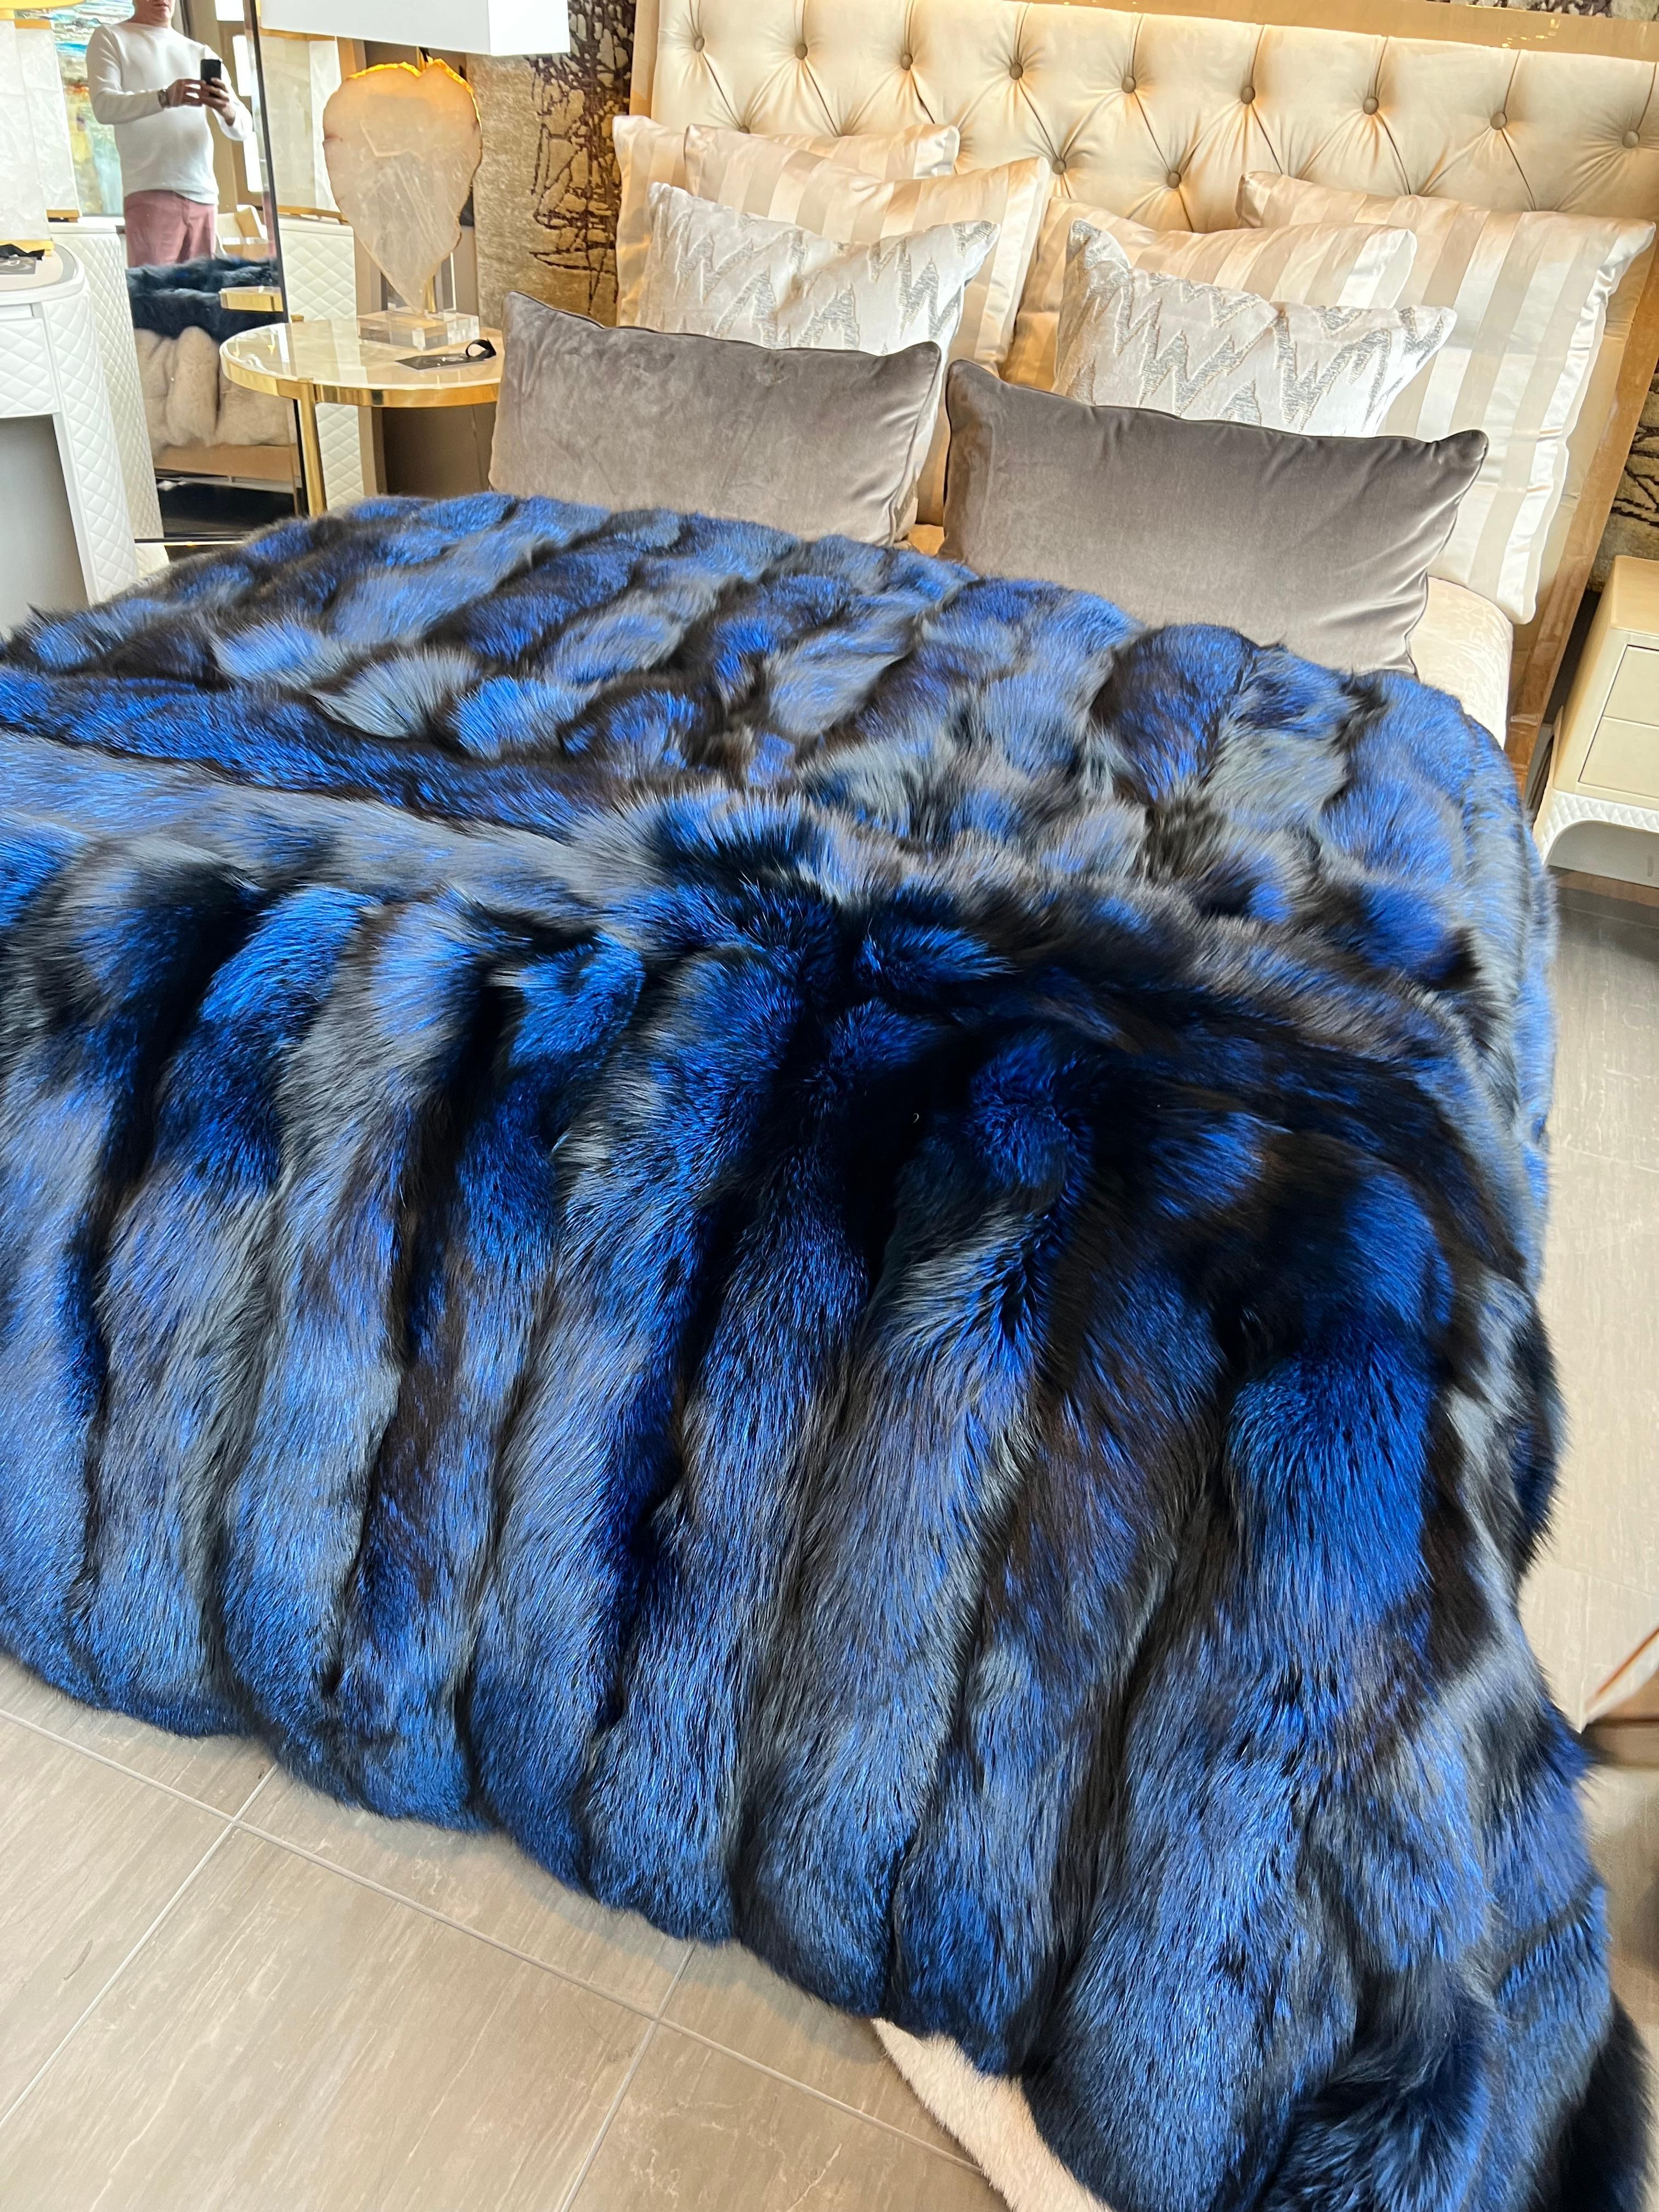 Diese magische natürlich gefärbte kobaltblaue Seide gefüttert Fuchs kanadischen dichten Pelz werfen / Blanlet ist erstaunlich, in jedem Raum.